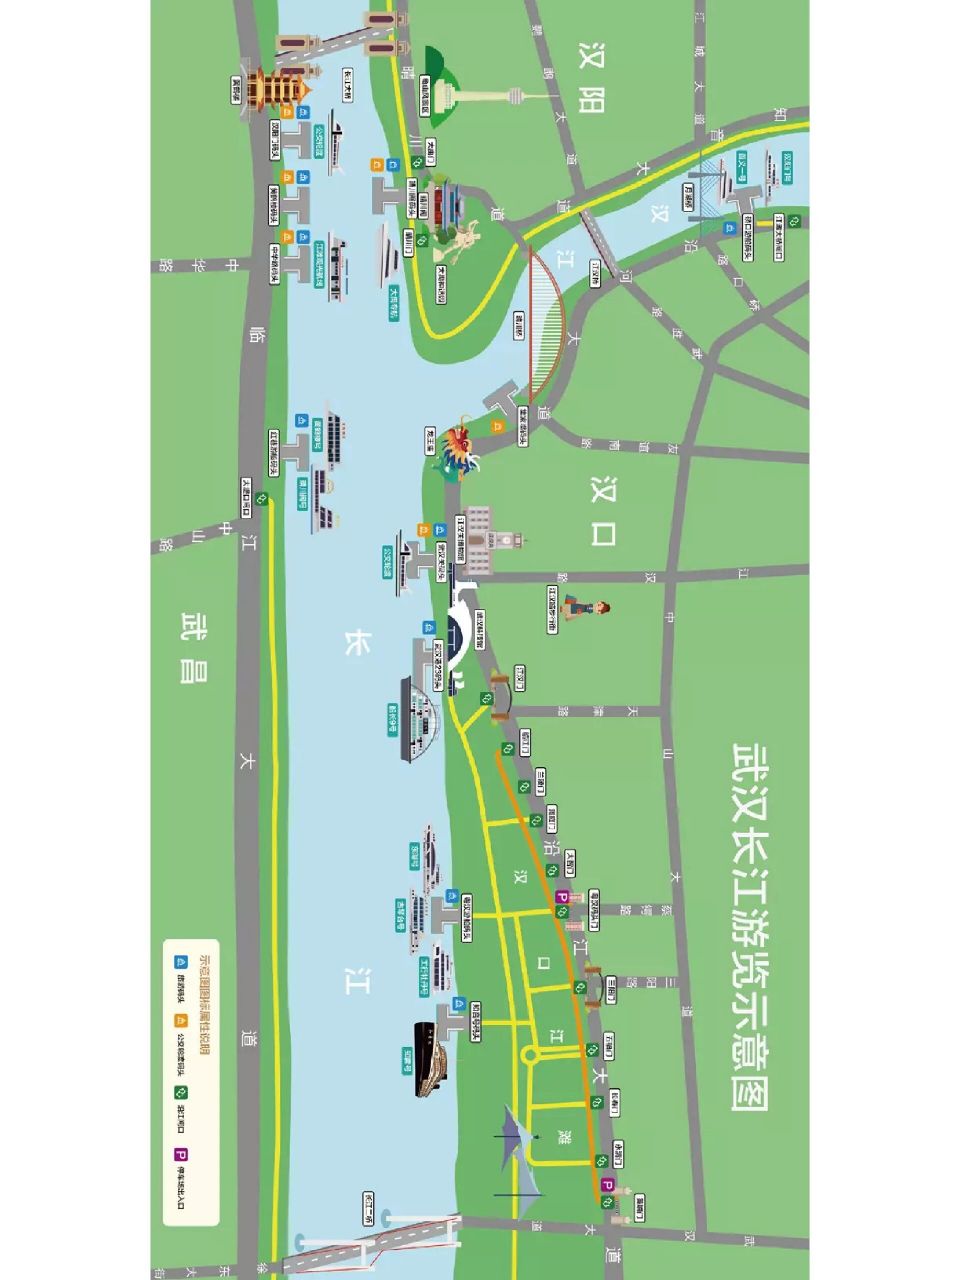 武汉轮渡路线图图片